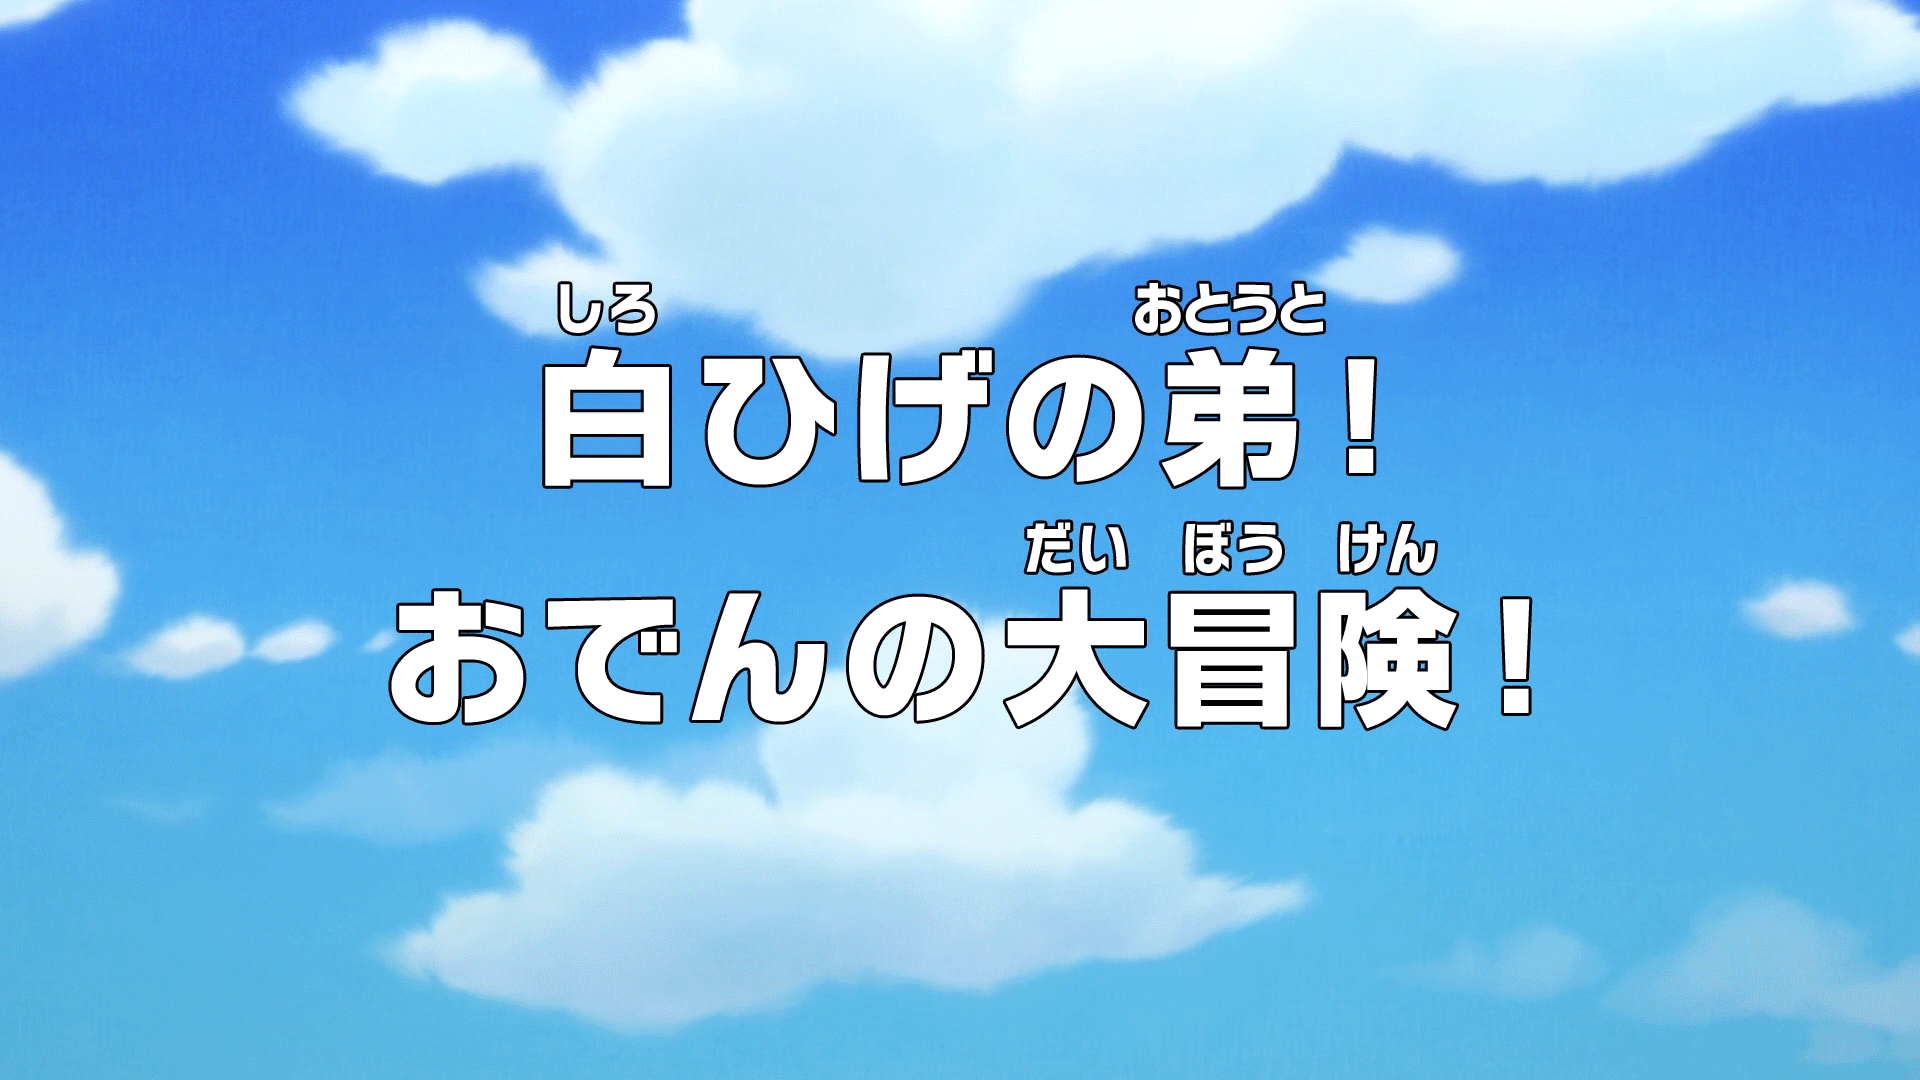 Episode 964 One Piece Wiki Fandom